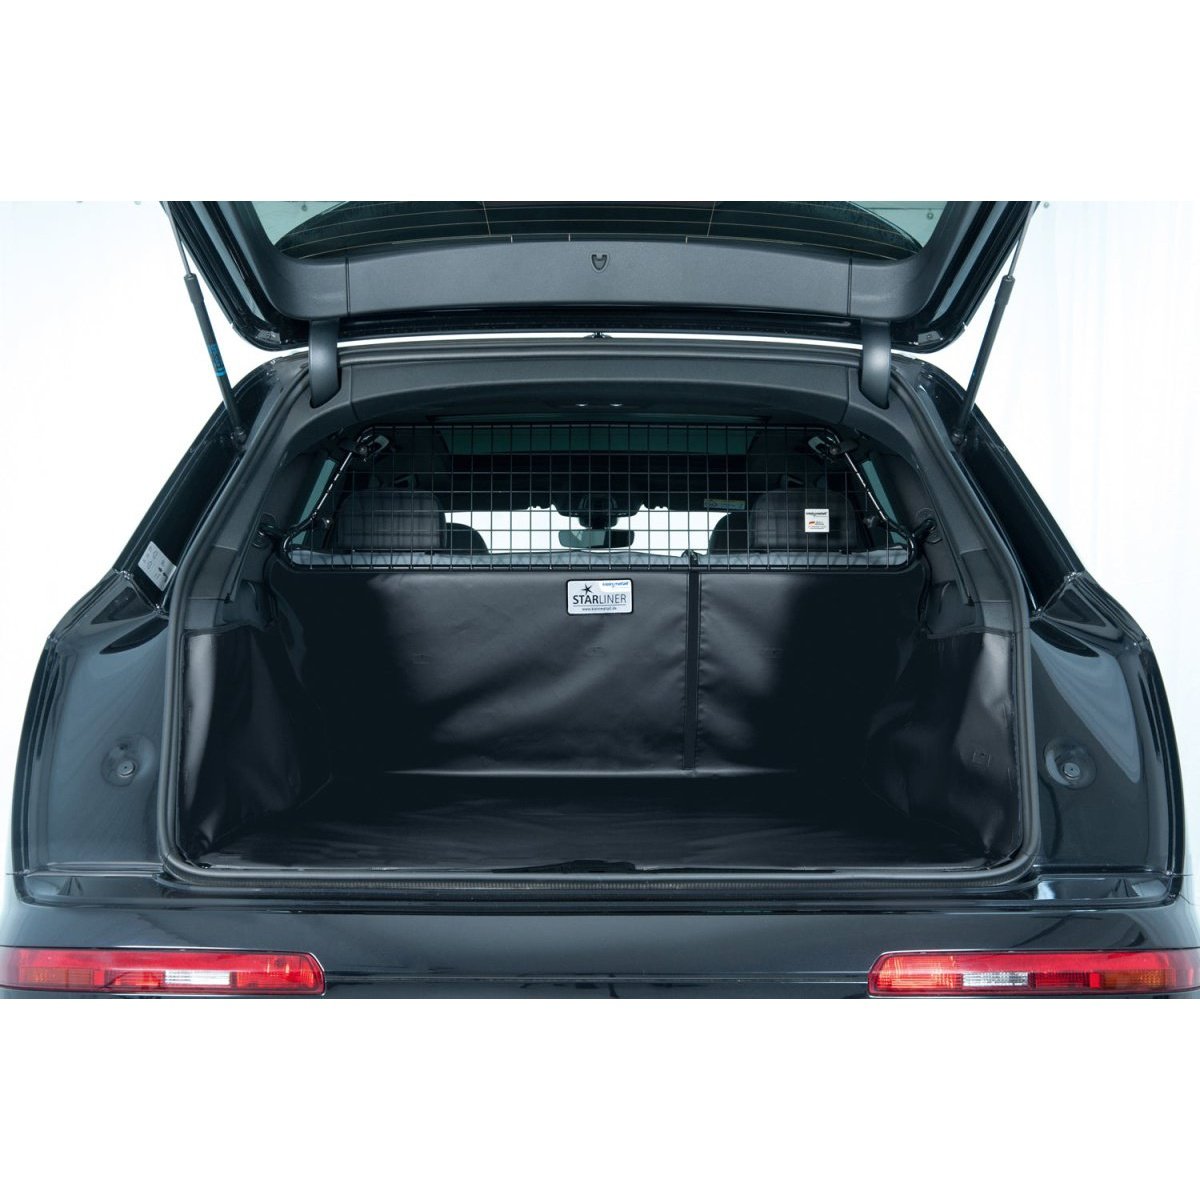 Kofferraumwanne für Skoda Superb Combi III + Hybrid Ladeboden eben, schwarz tierxxl-de